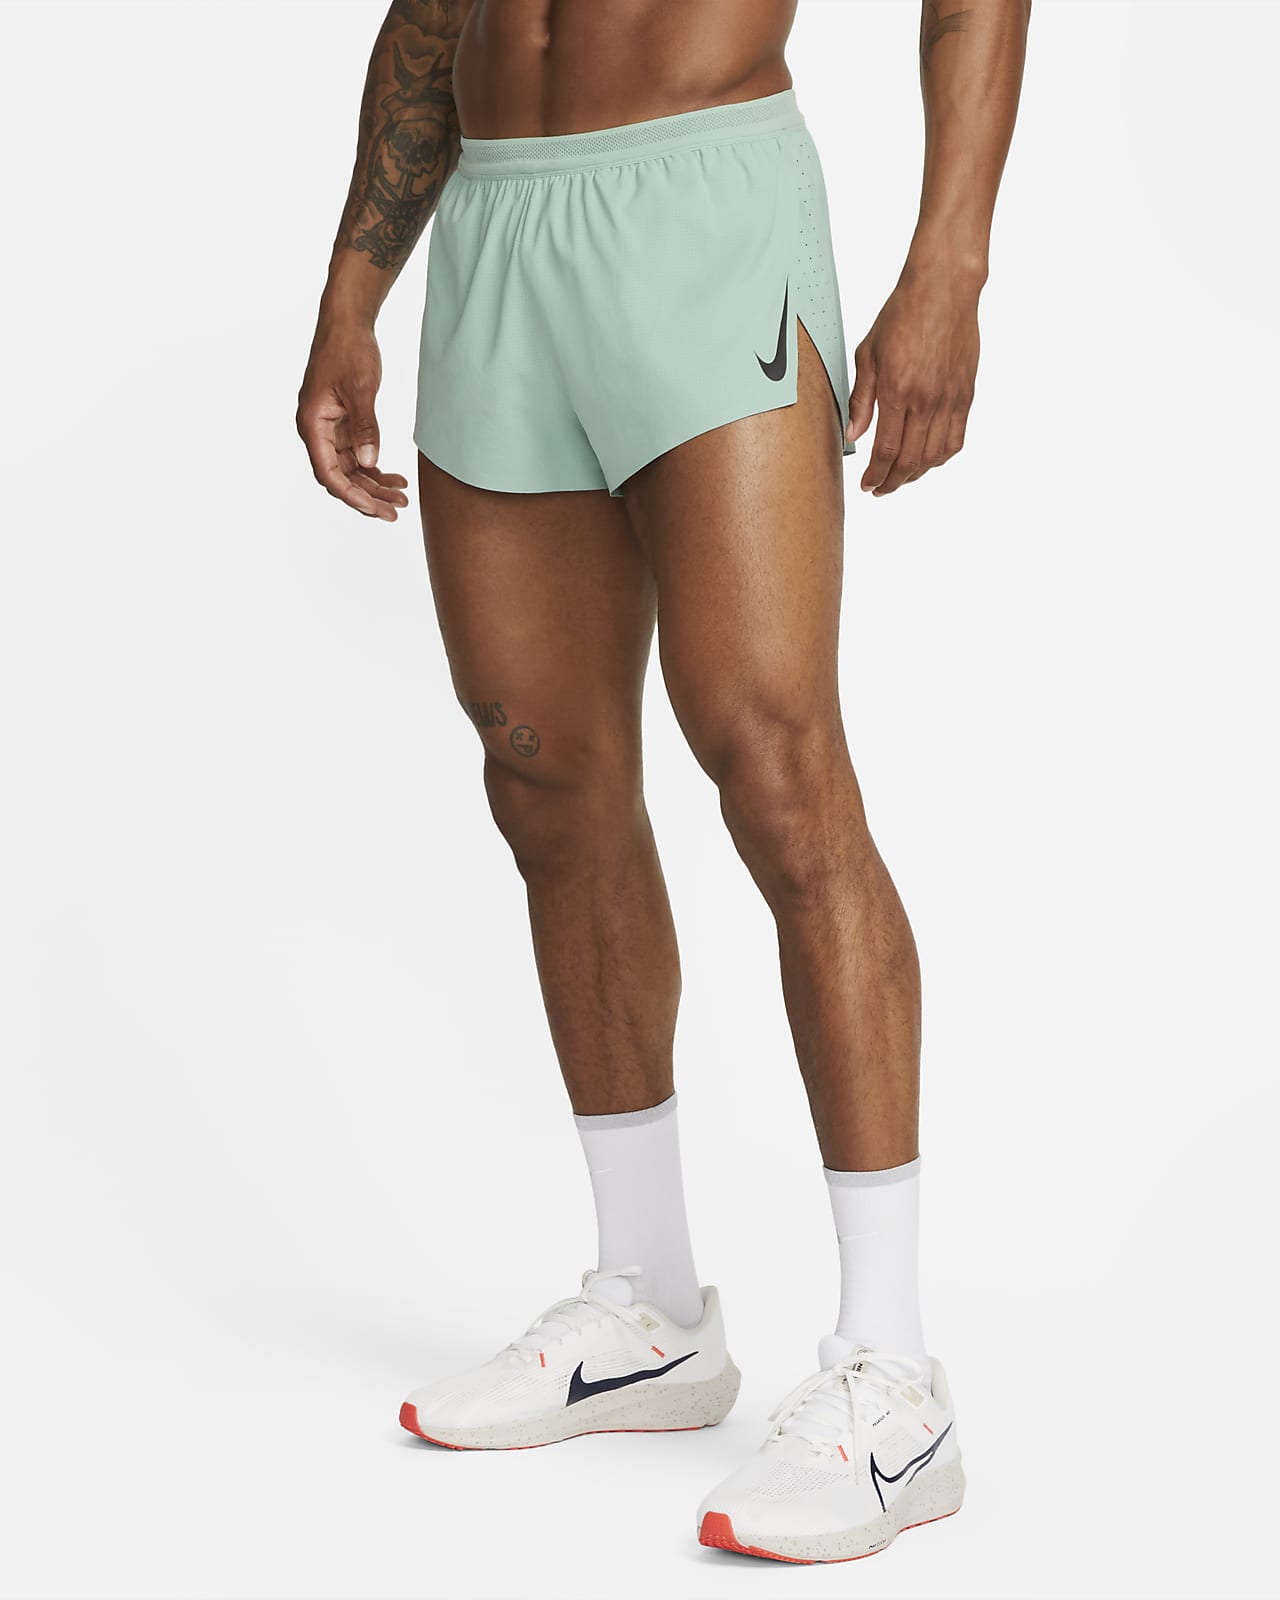 Nike AeroSwift 5 cm-es, belső rövidnadrággal bélelt férfi versenyrövidnadrág